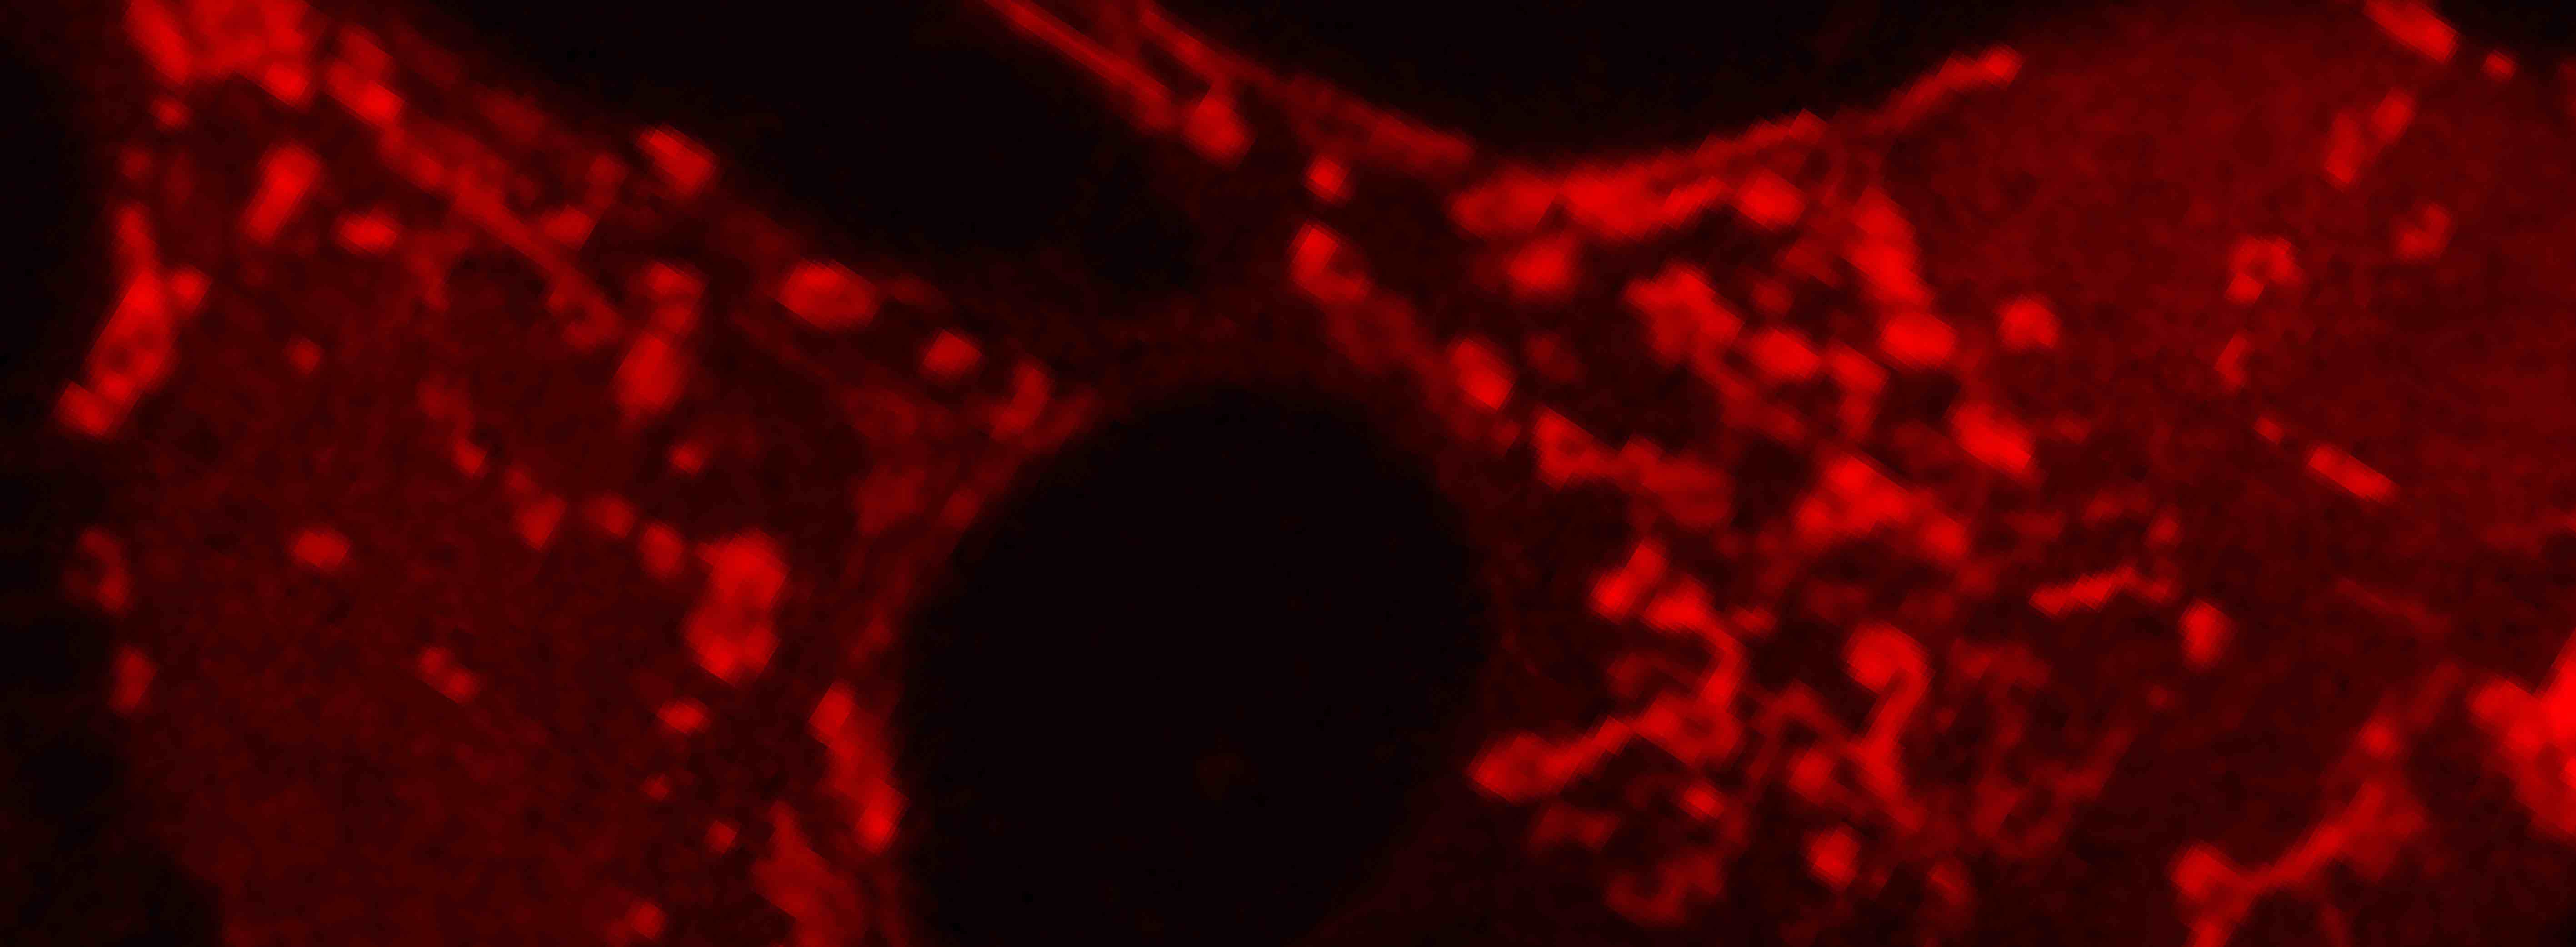 Células del cerebro de ardilla con mitocondrias fluorescentes rojas brillantes